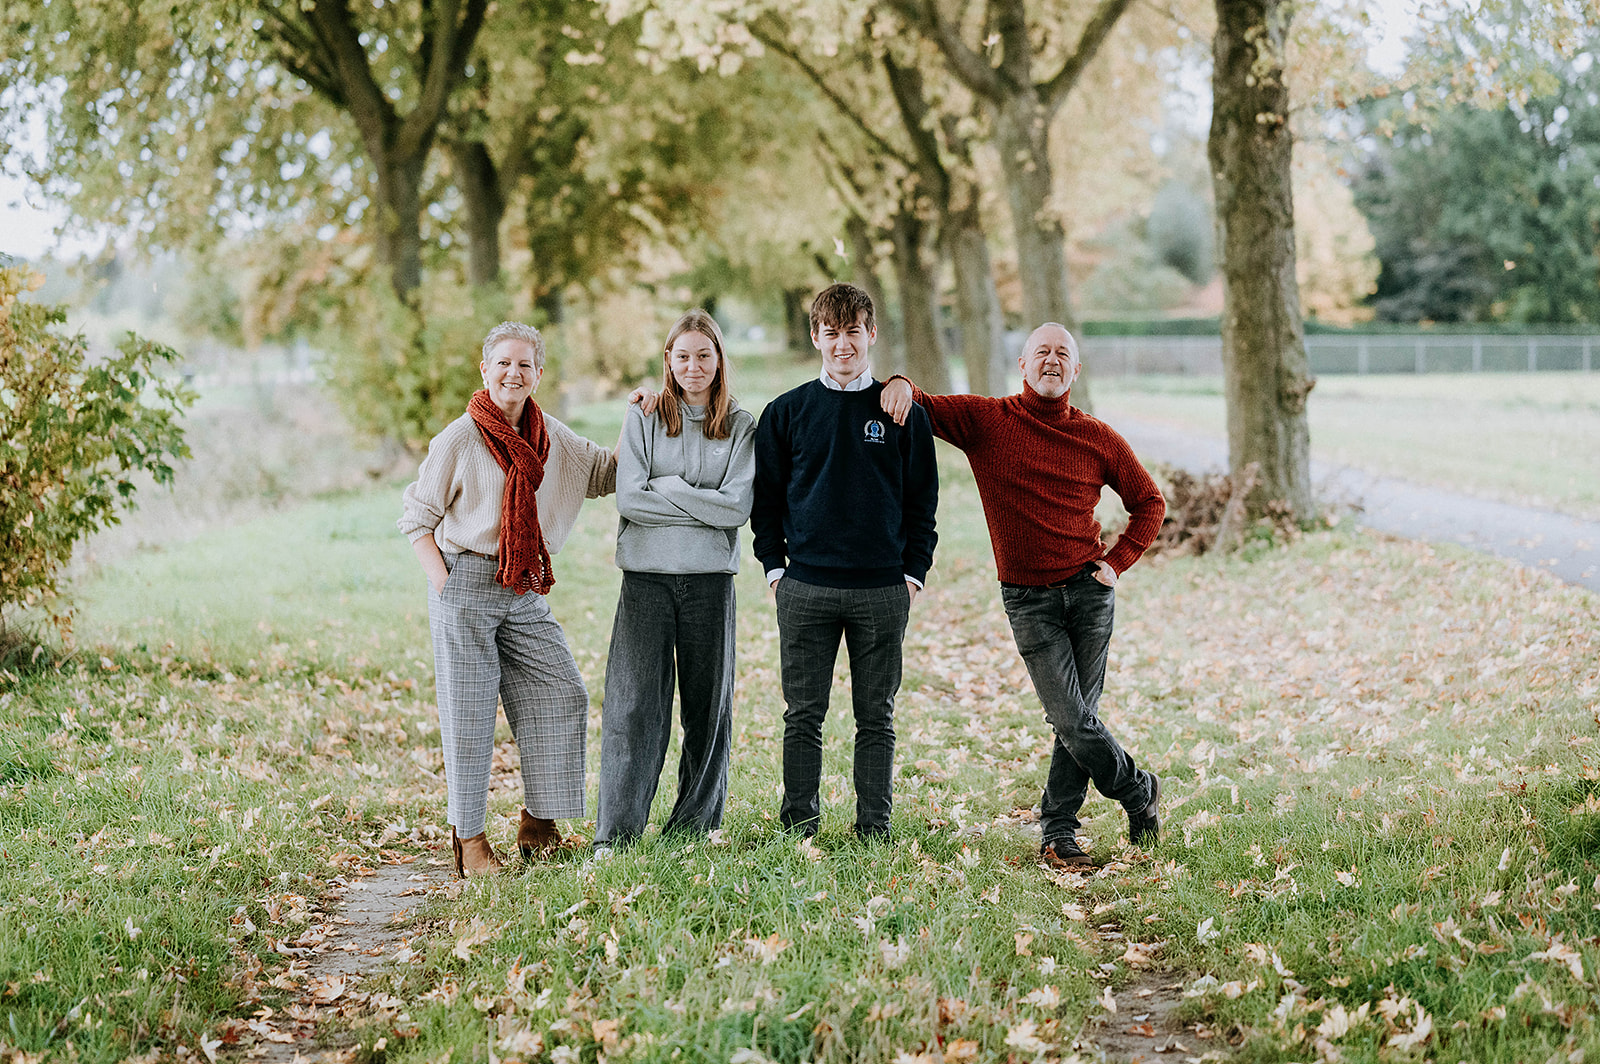 Familiefoto in het groen, genomen in een bospad. Op de foto zie je een gezin met 2 kinderen.